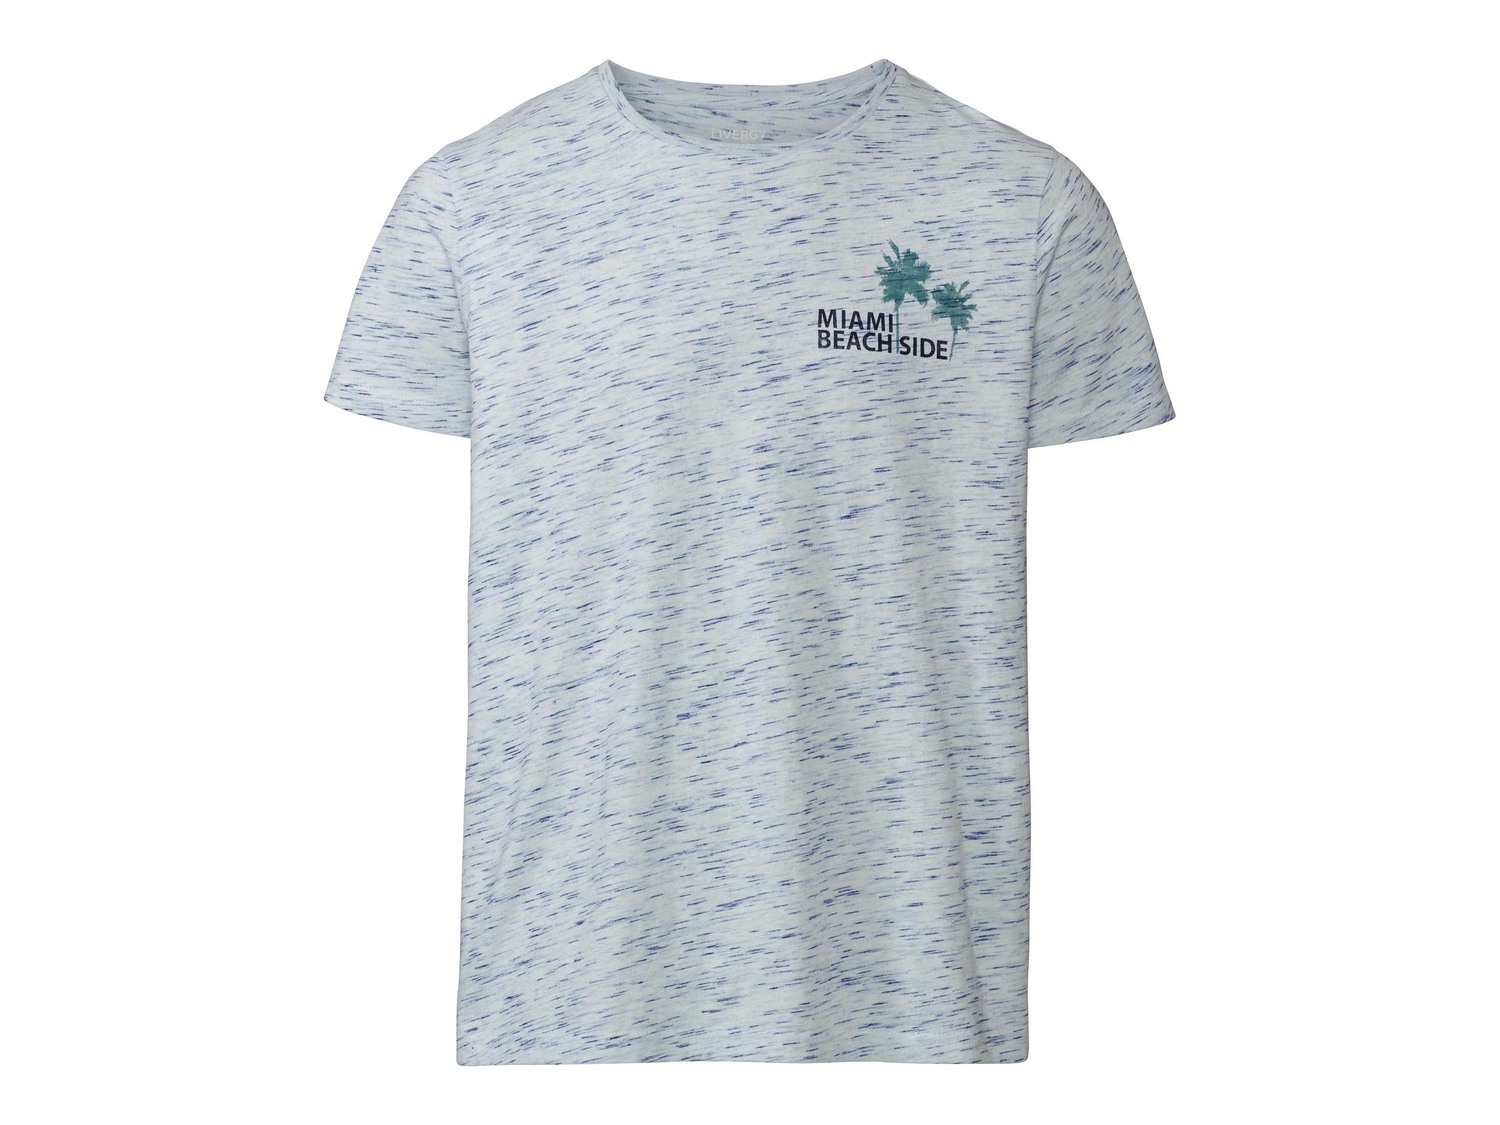 T-shirt da uomo Livergy, prezzo 3.99 &#8364;  
Misure: S-XL